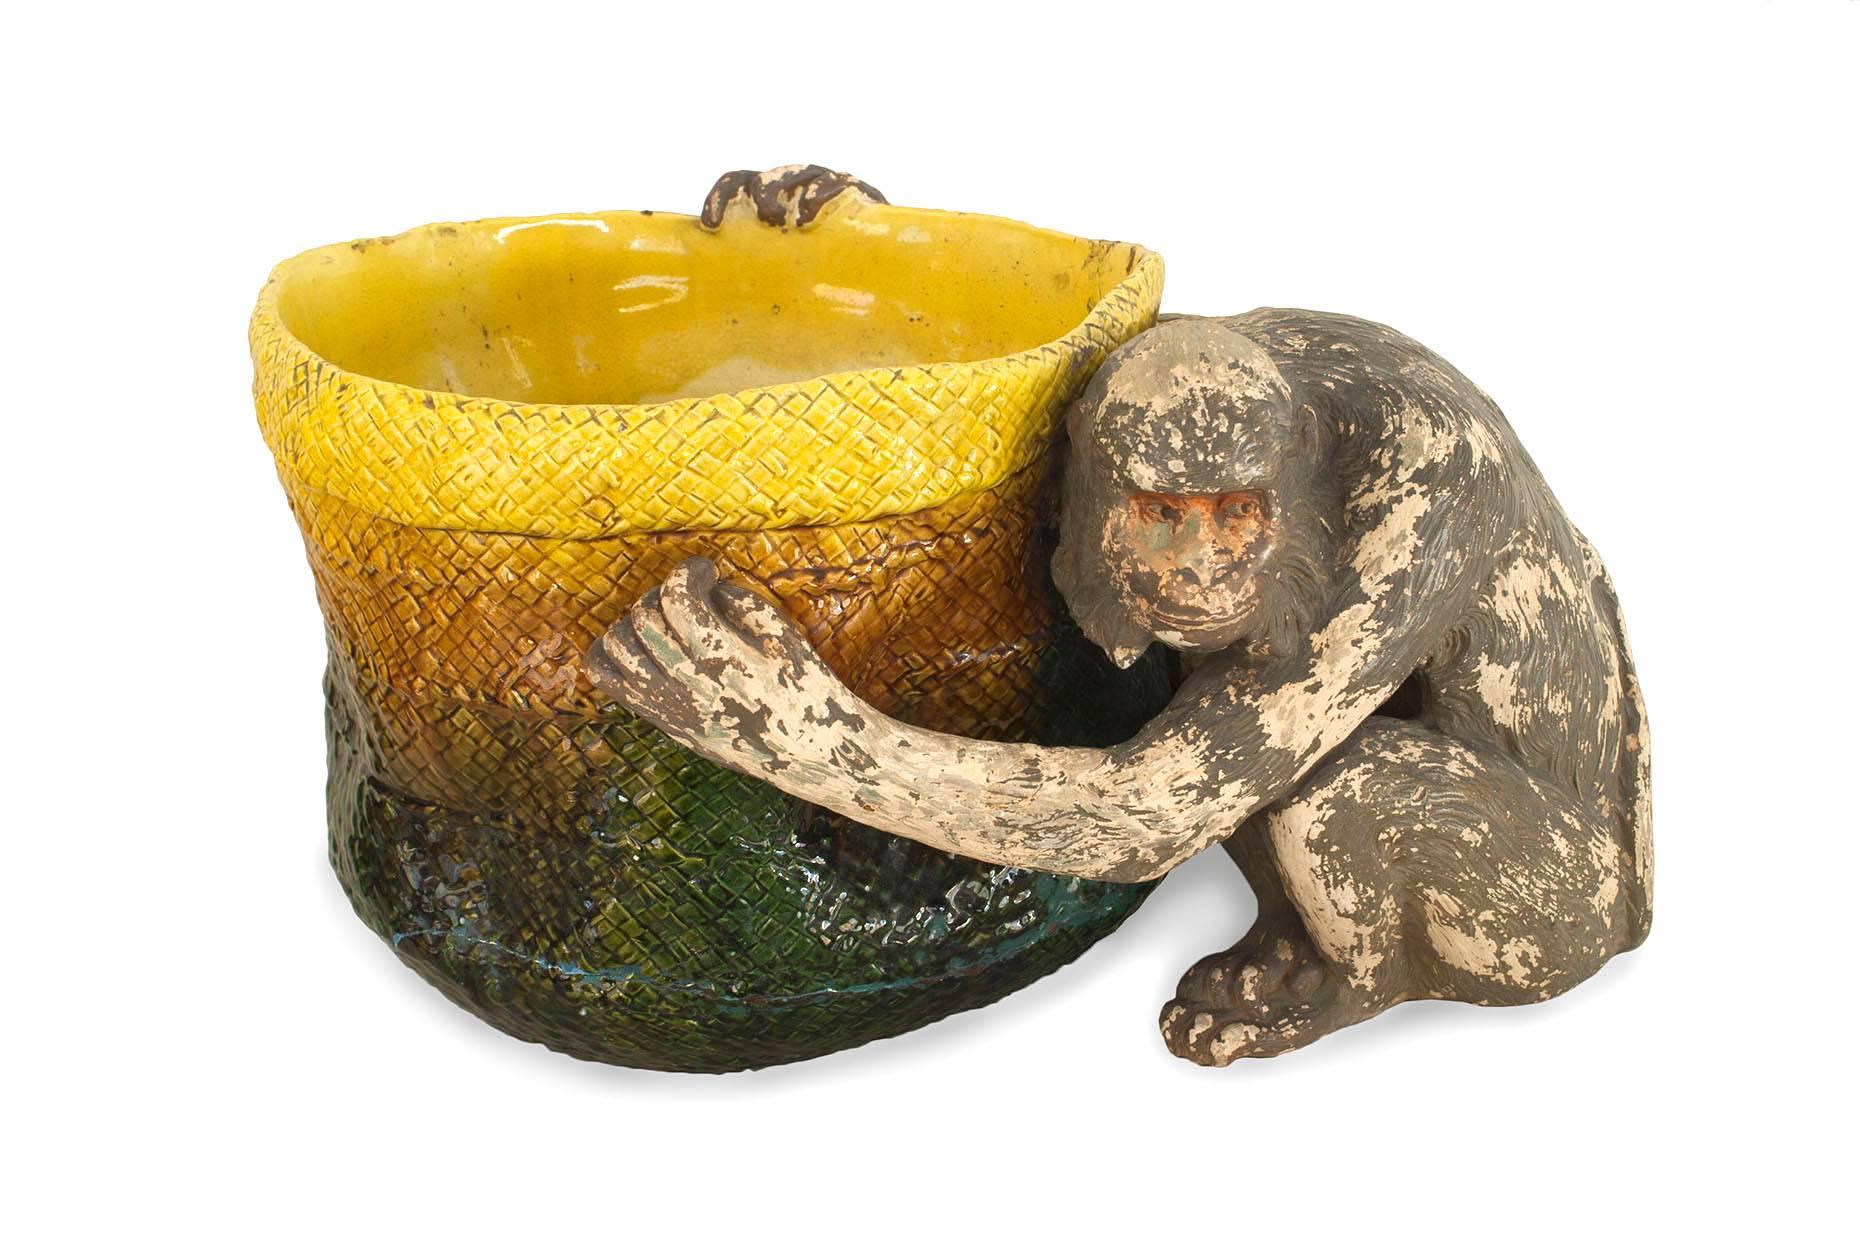 Jardinière victorienne (Majolique) en porcelaine verte et jaune en forme de panier tenu par un singe assis (timbres : BRETBY ENGLAND)
